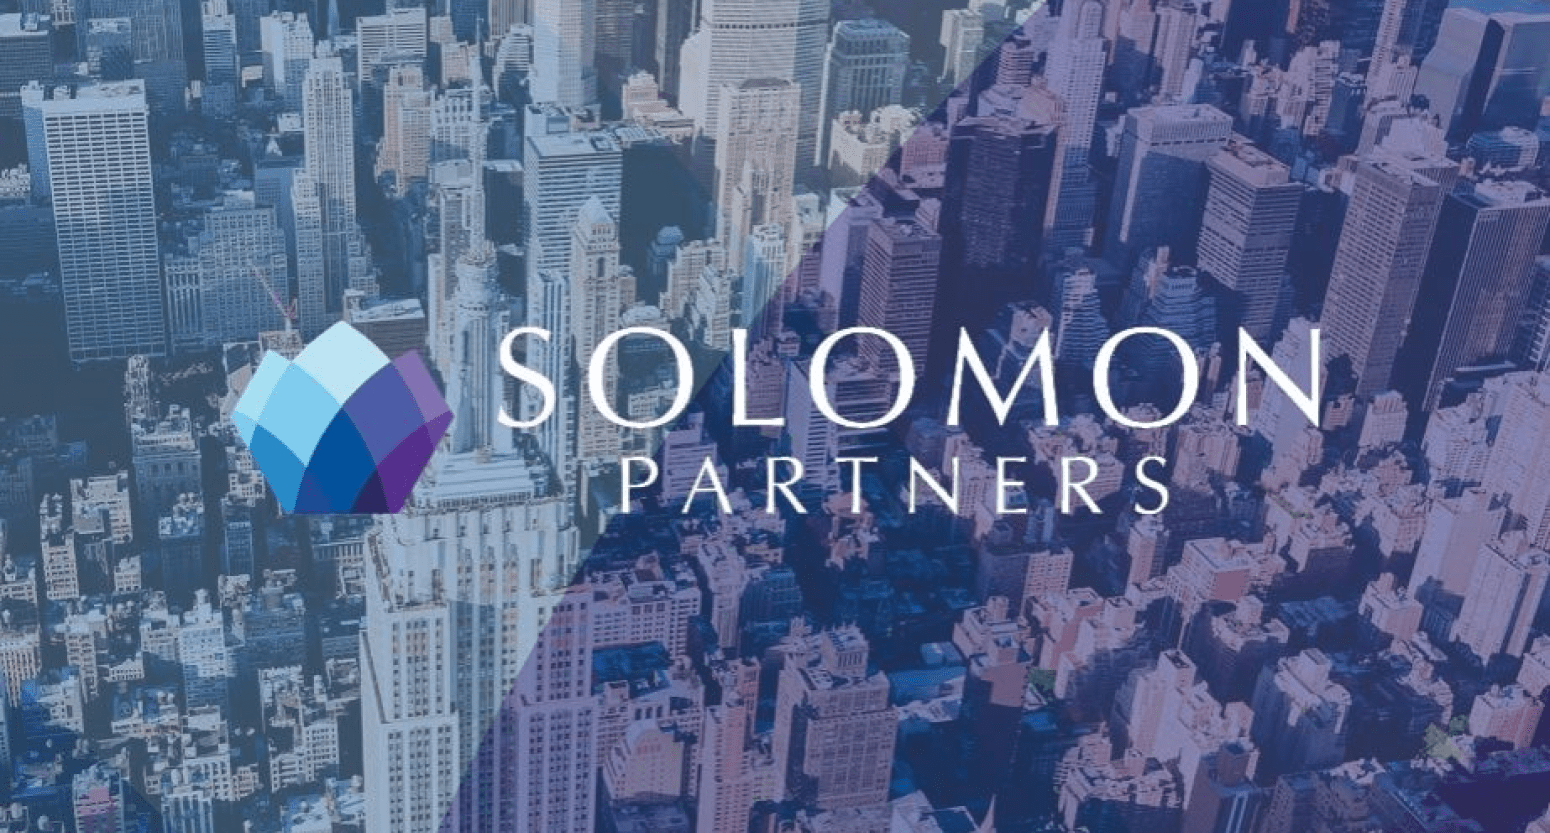 Solomon Partners